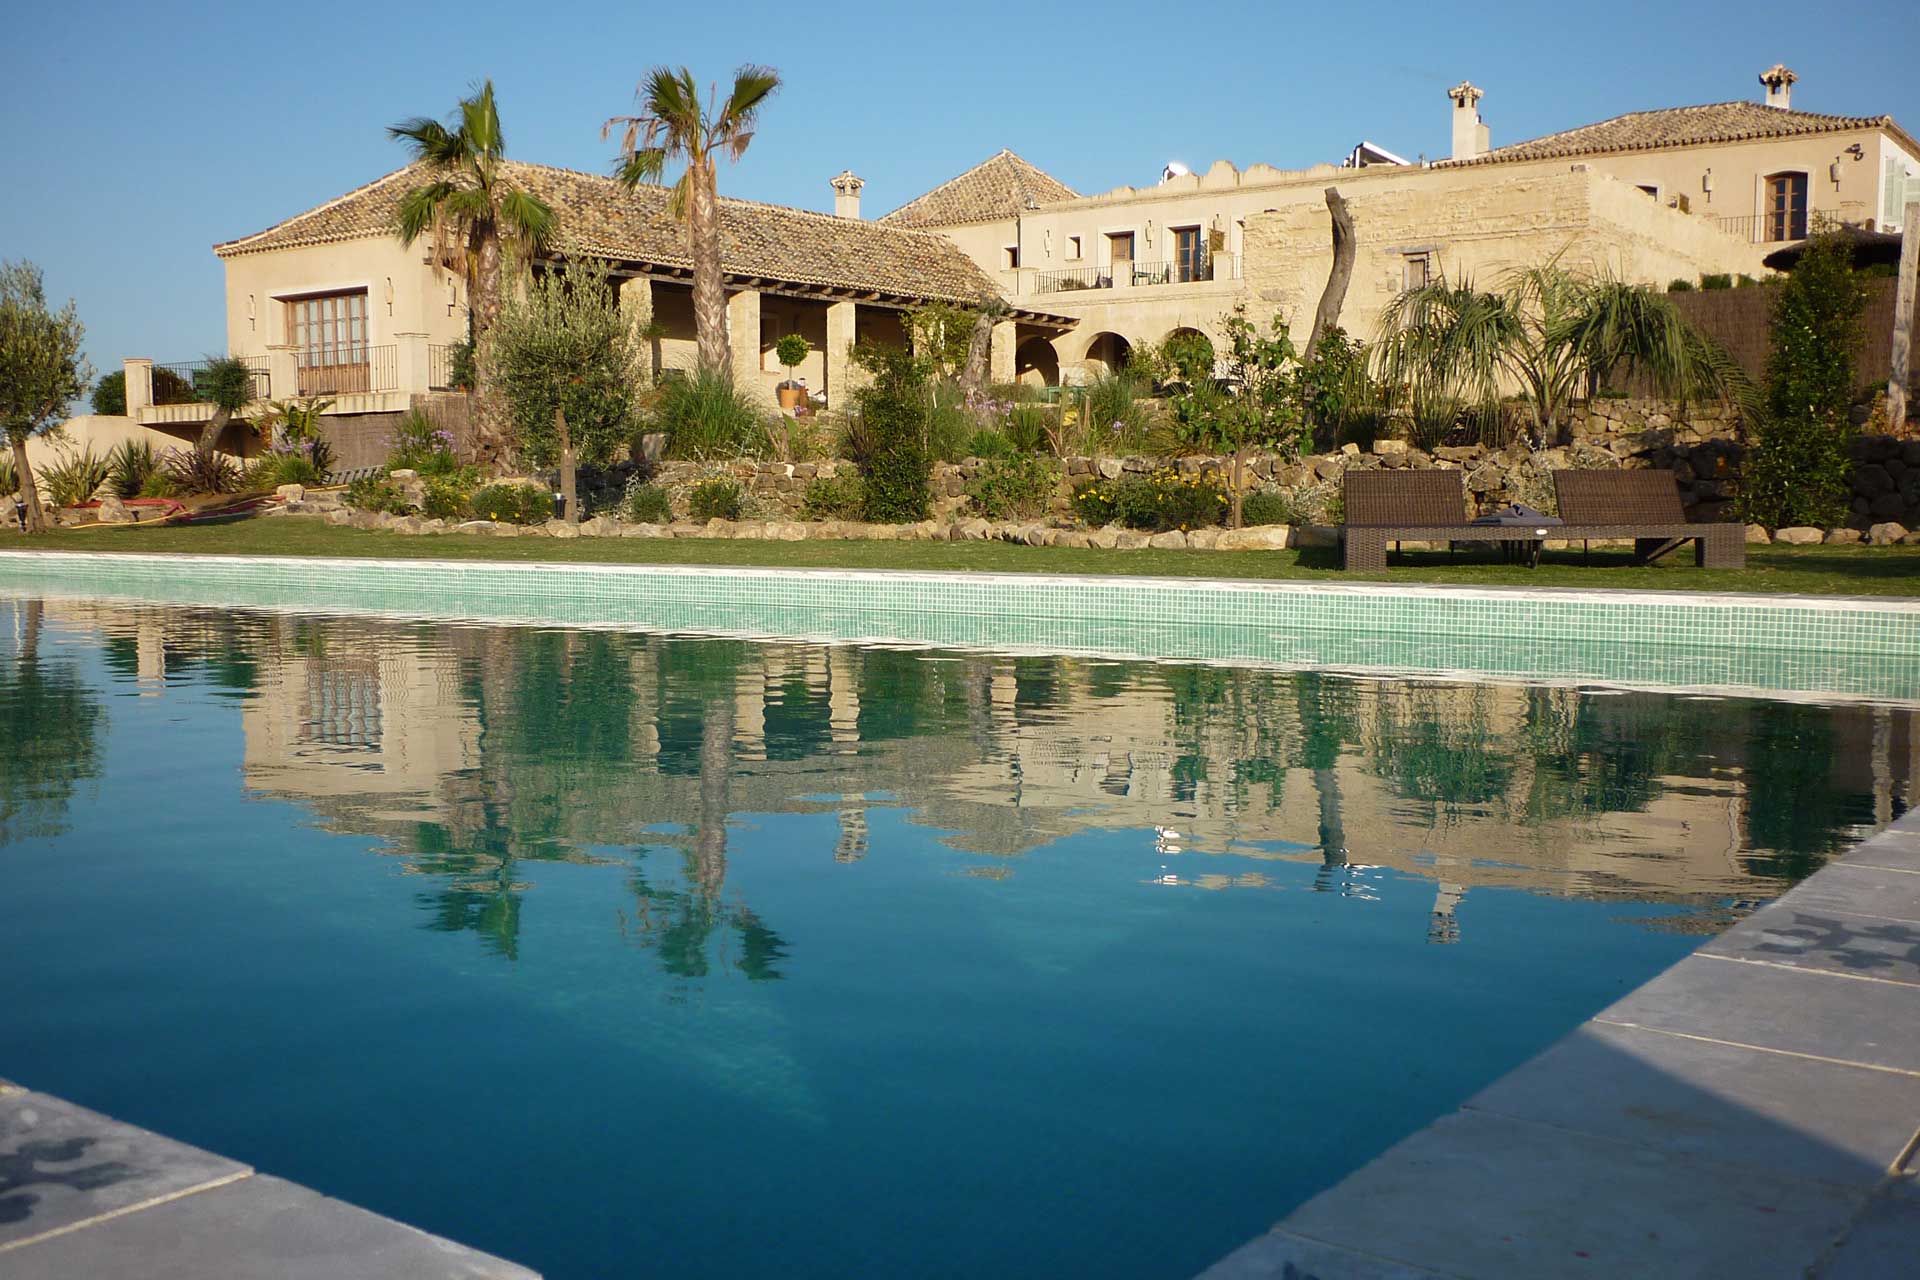 Casa La Siesta pool